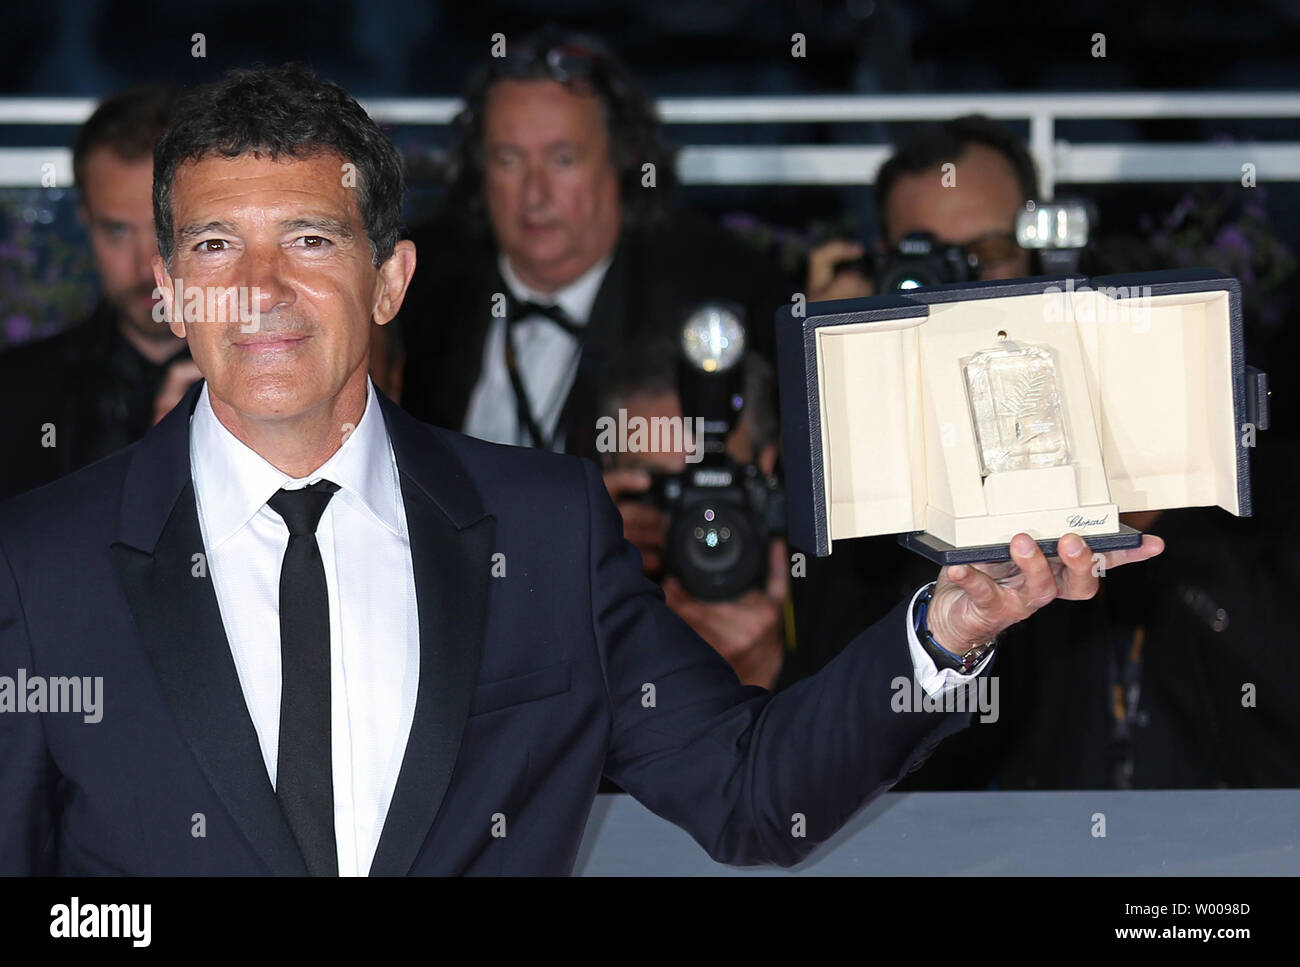 L'acteur Antonio Banderas arrive à la bourse photocall après avoir reçu le prix "Meilleur acteur" pour le film 'La douleur et la gloire" au cours de la 20e Congrès International du Film de Cannes à Cannes, France le 25 mai 2019. Photo de David Silpa/UPI Banque D'Images